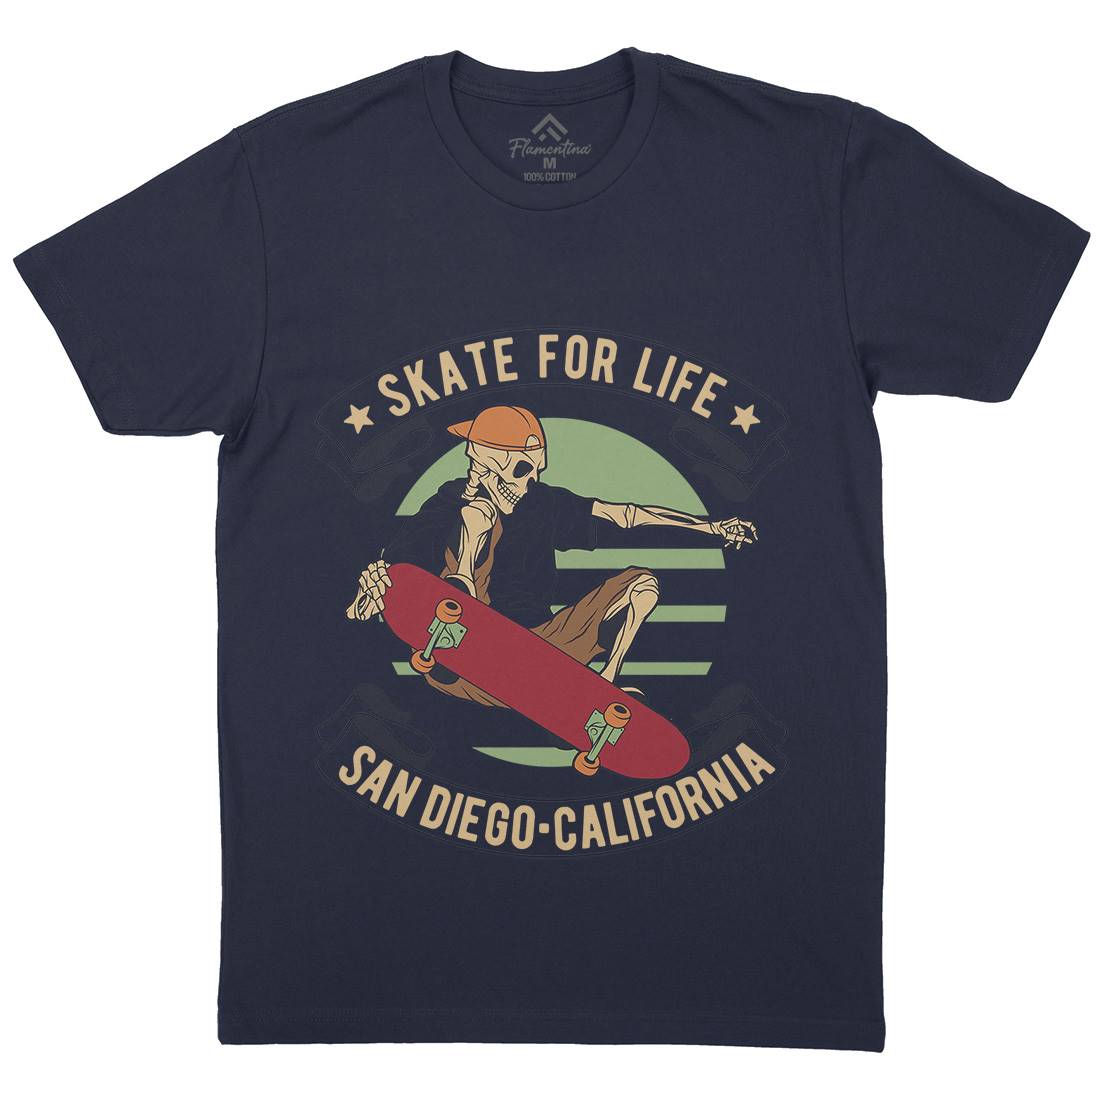 For Life Mens Crew Neck T-Shirt Skate D970